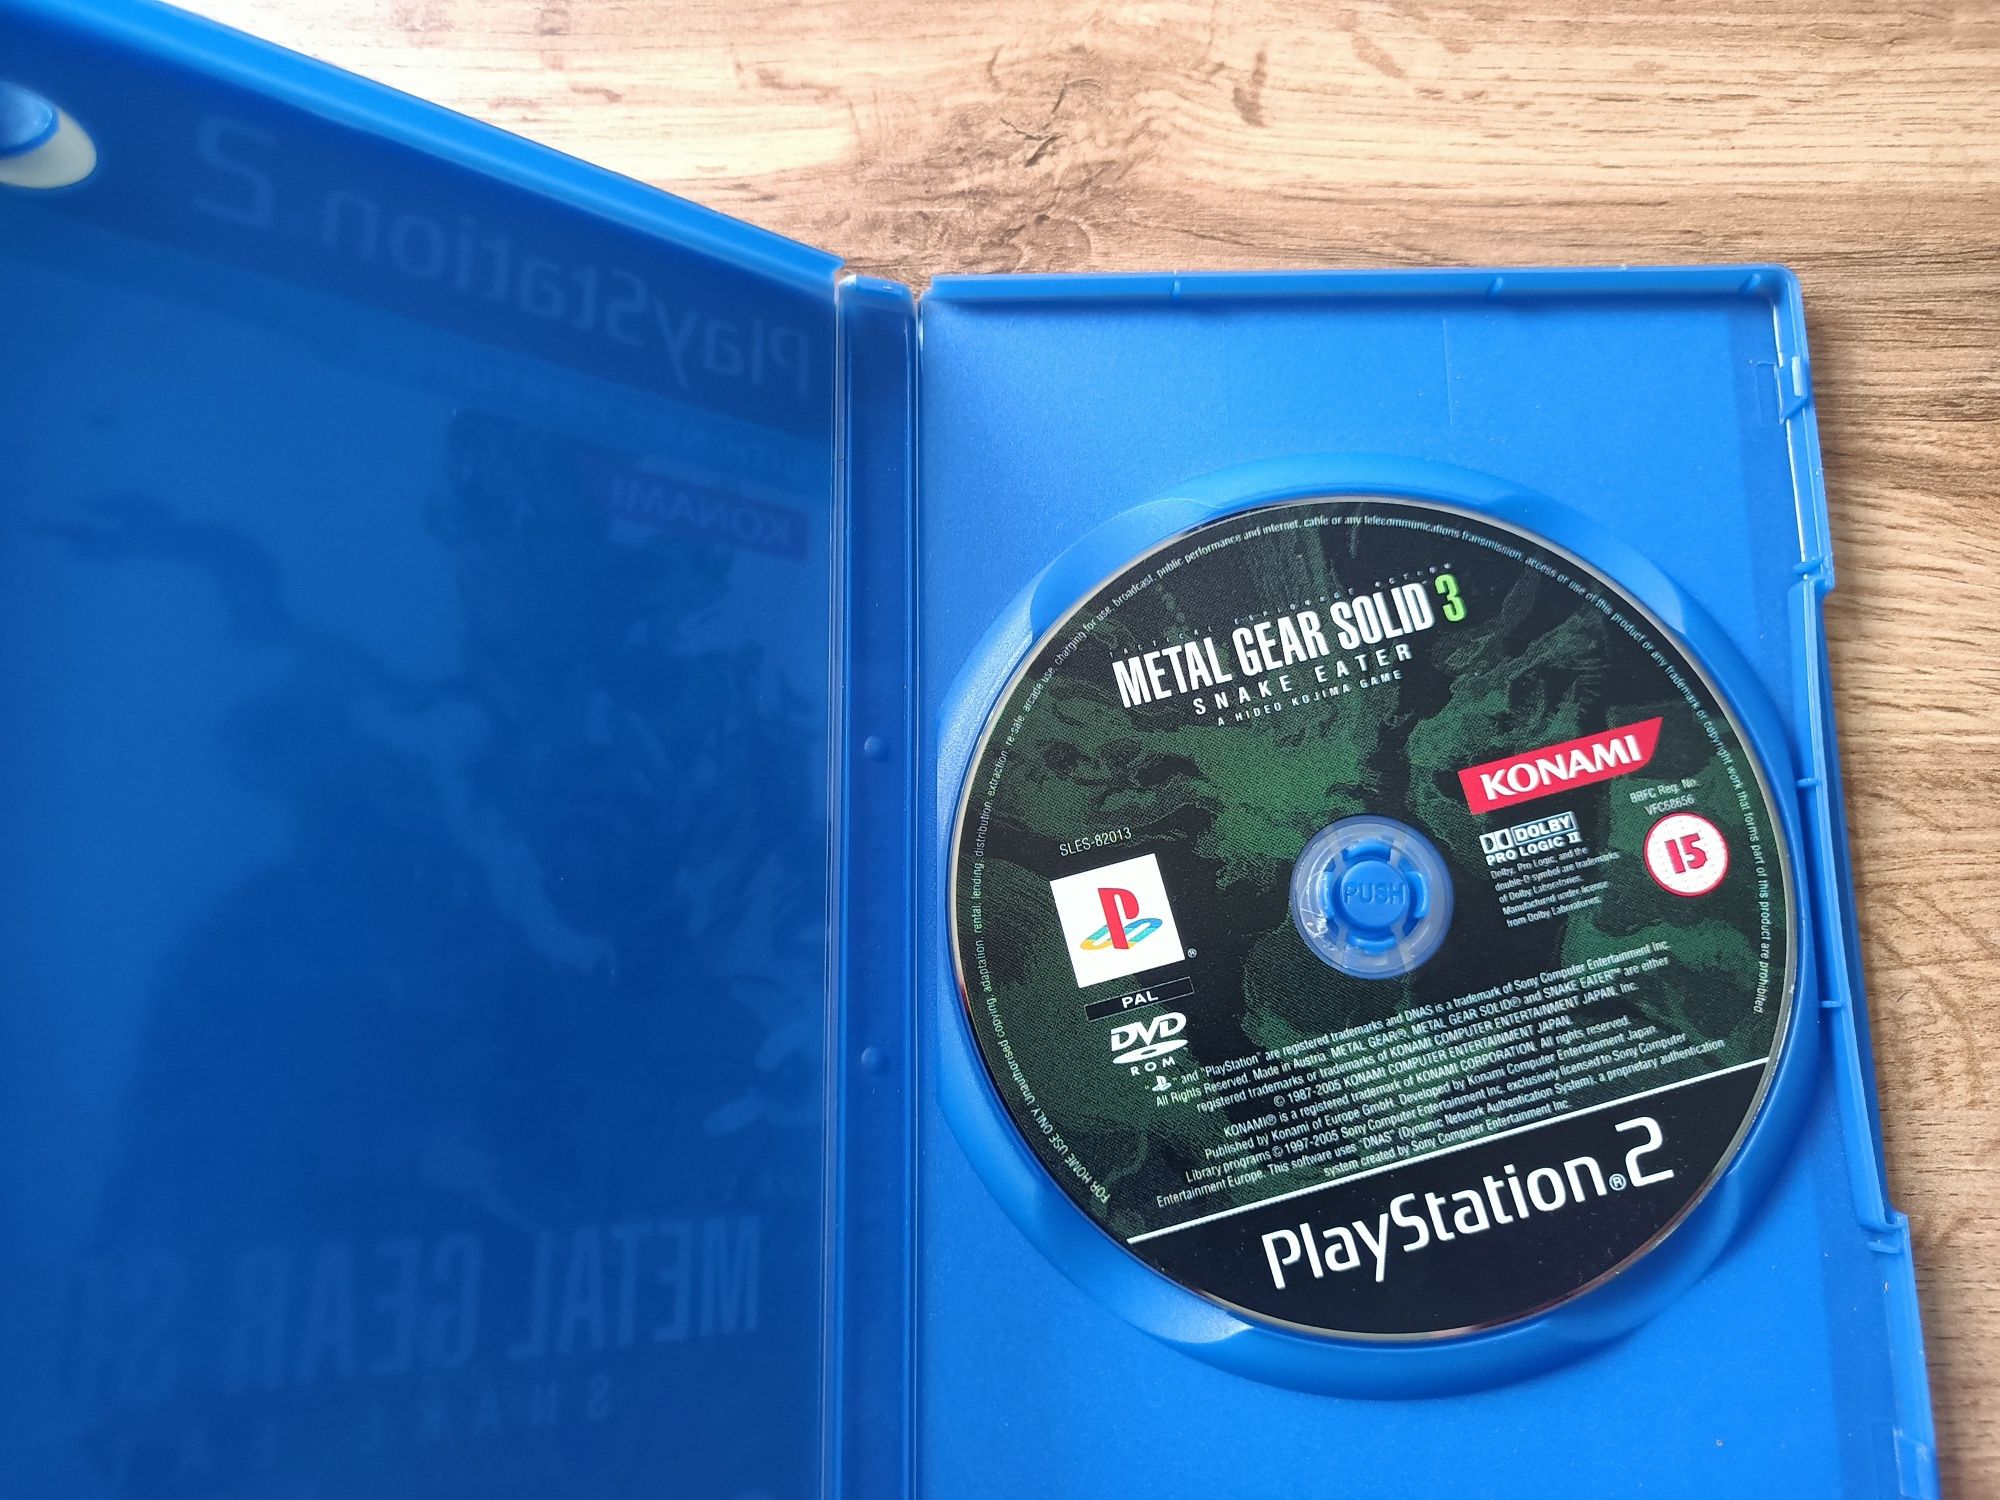 Metal Gear Solid 3 , JAK 3 i Suzuki Racing na PS2